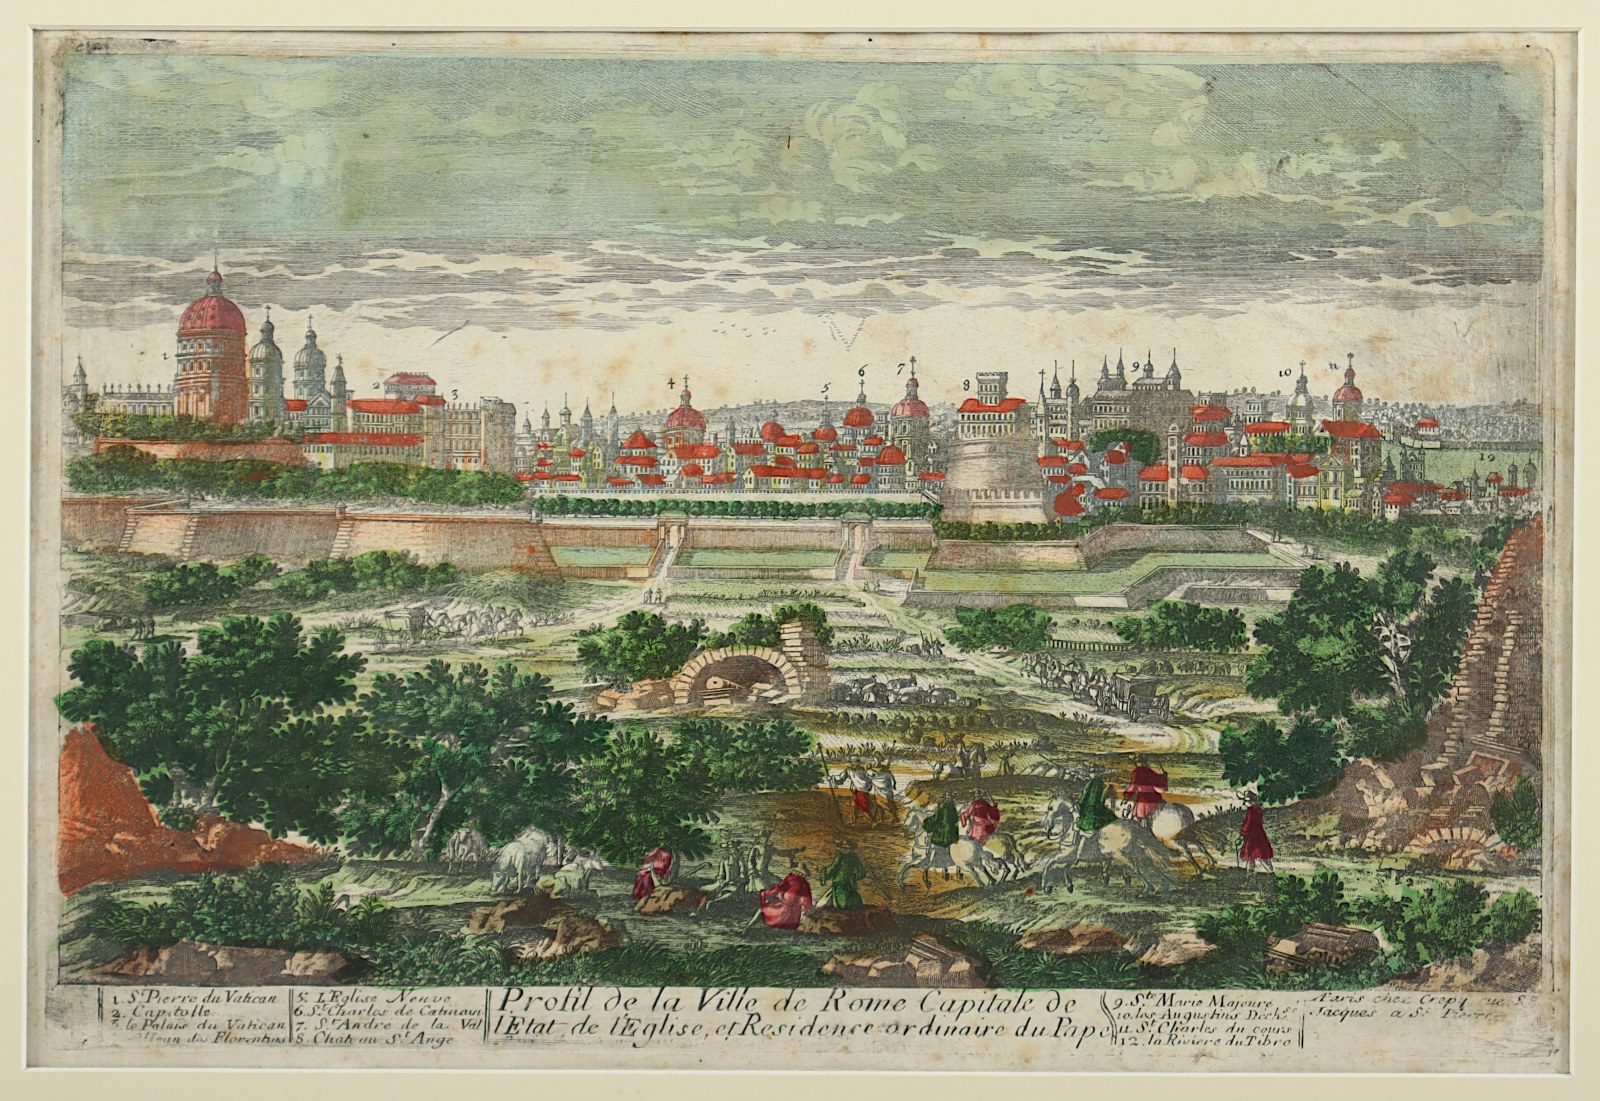 ROM, "Profil de la ville de Rome..", kolorierter Kupferstich, 20 x 31, 18.Jh., besch., R.  - Image 2 of 2